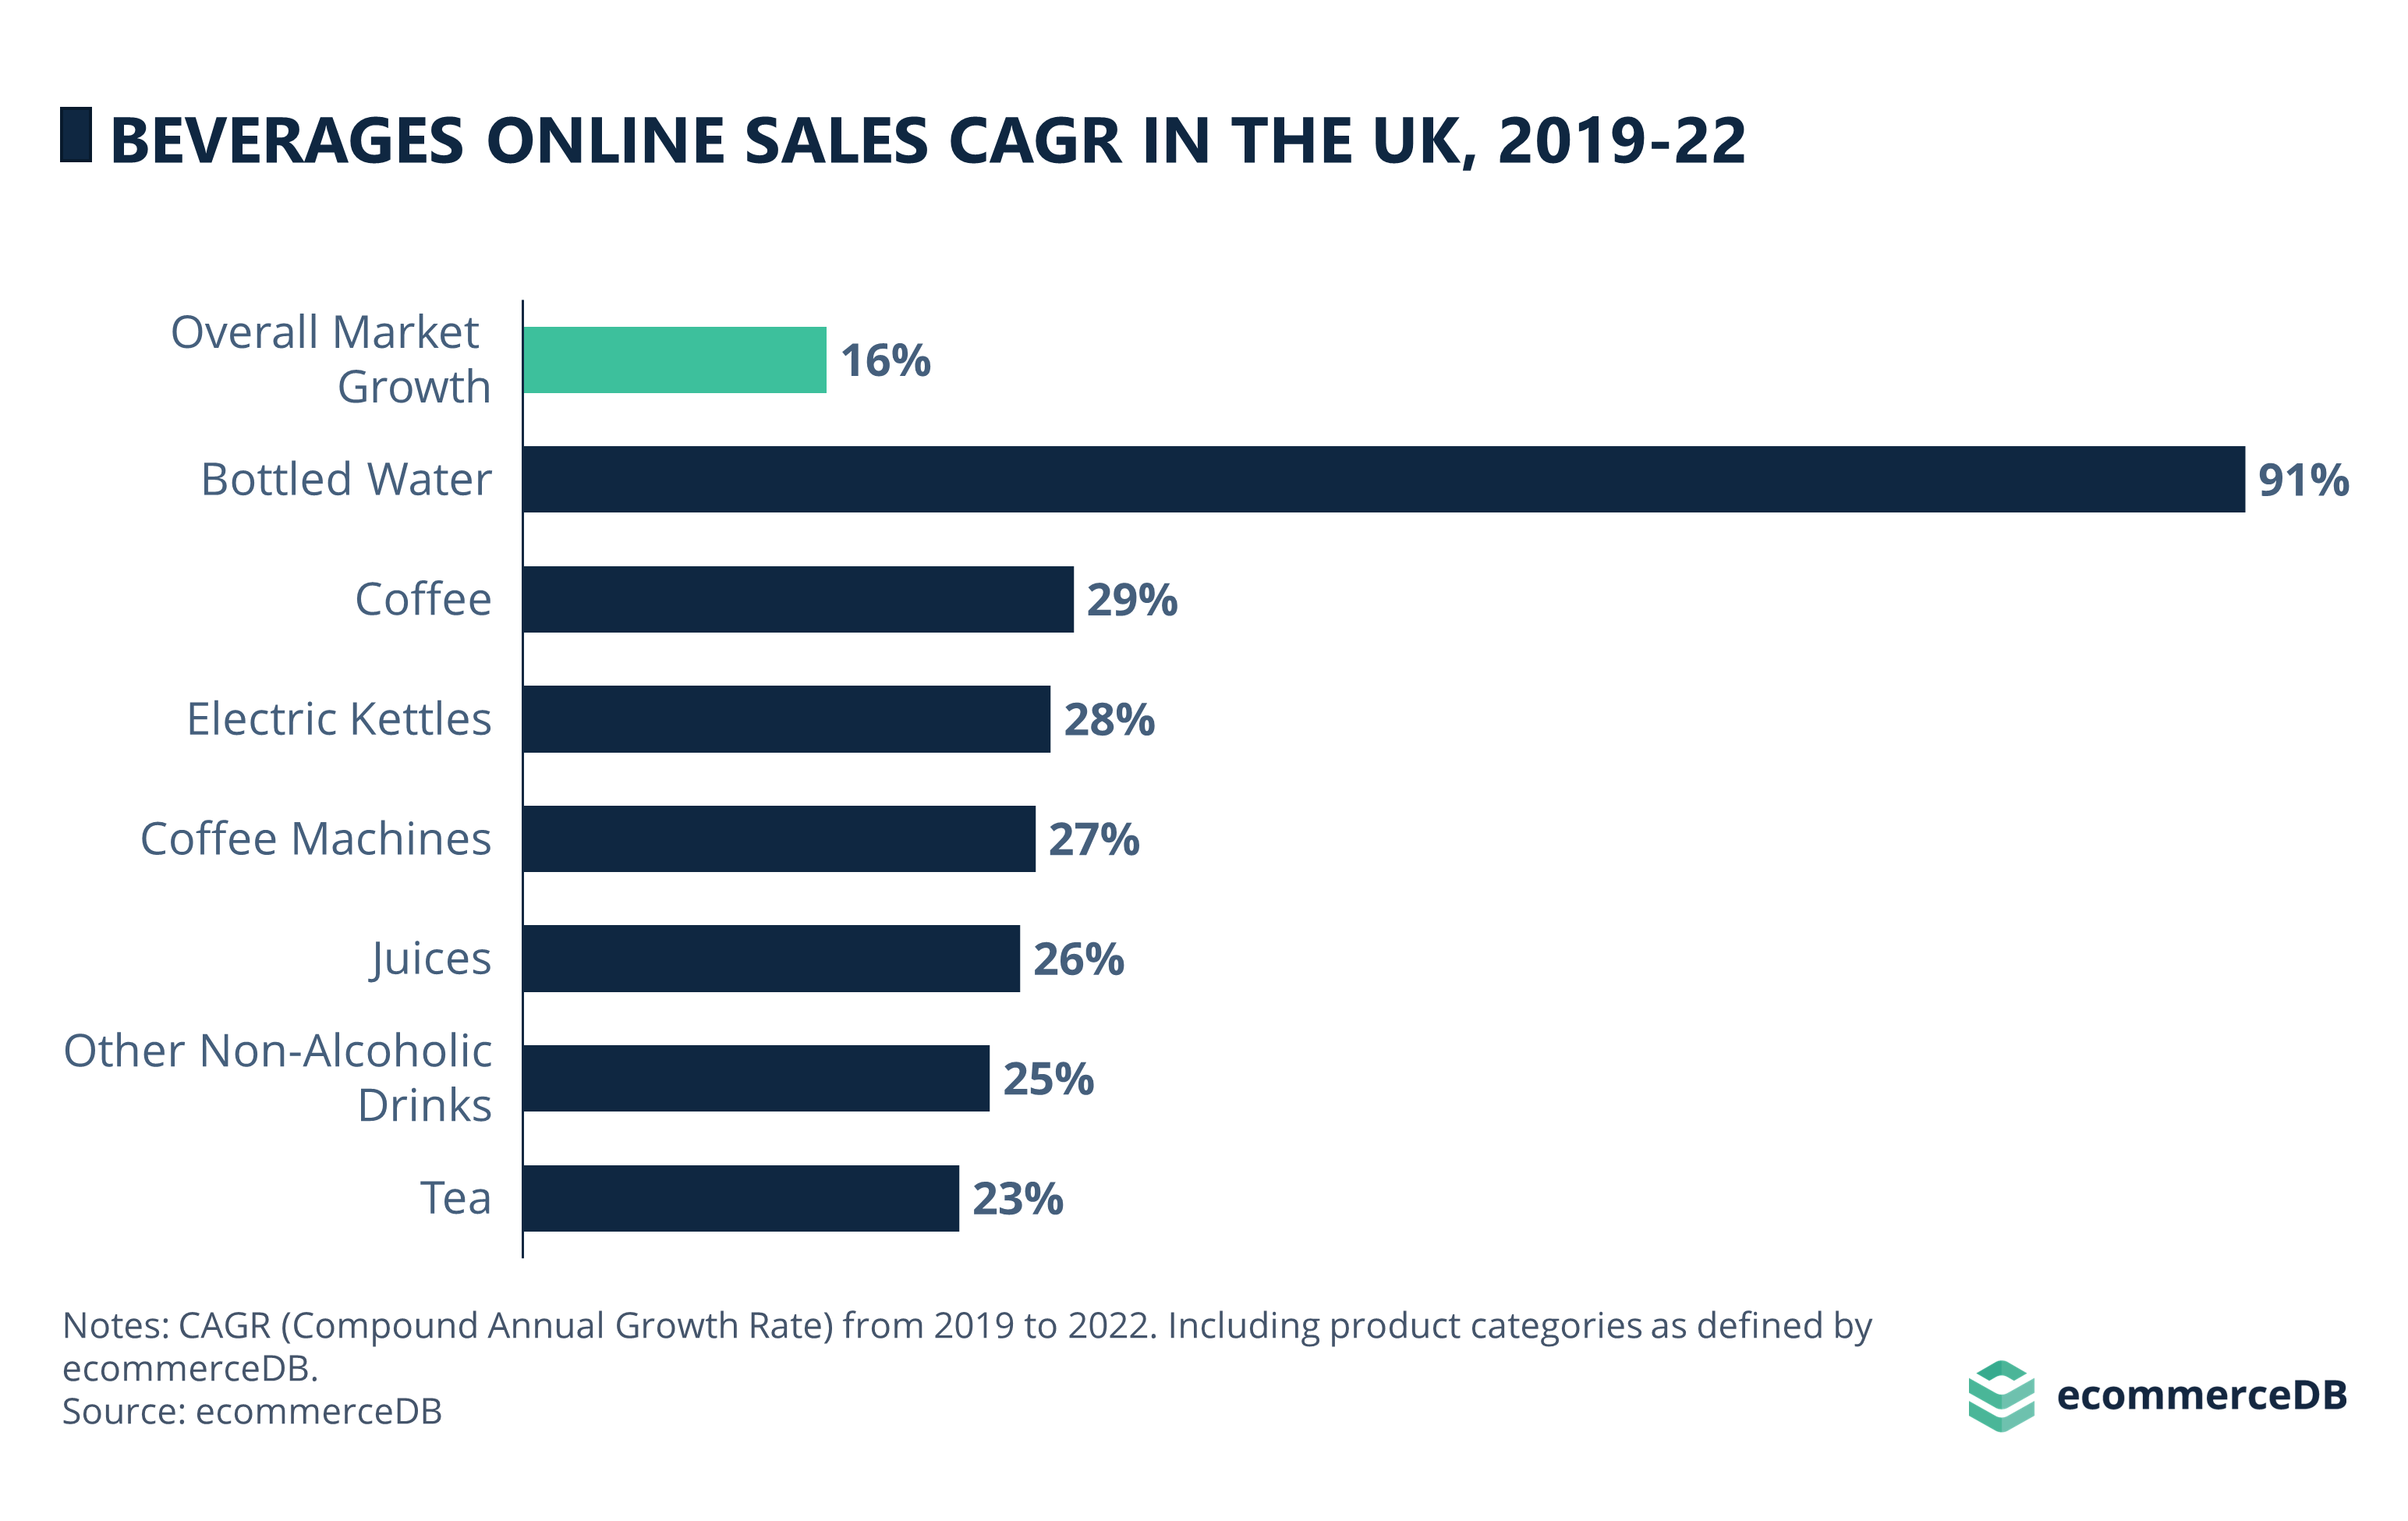 UK Beverages Online Sales CAGR (2019-22)